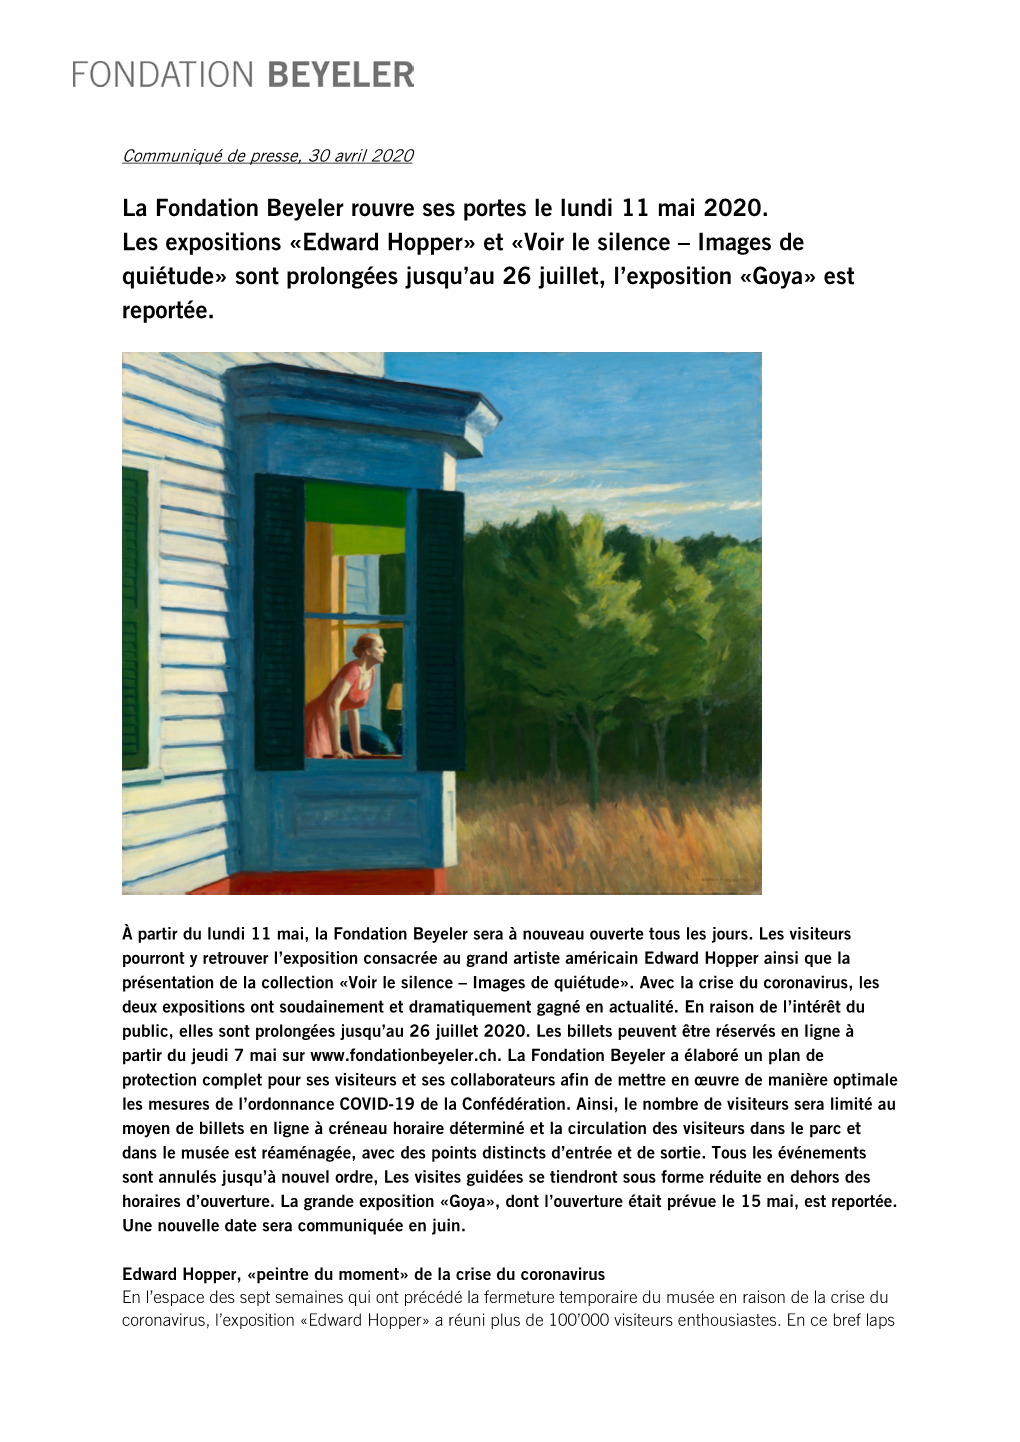 Edward Hopper» Et «Voir Le Silence – Images De Quiétude» Sont Prolongées Jusqu’Au 26 Juillet, L’Exposition «Goya» Est Reportée